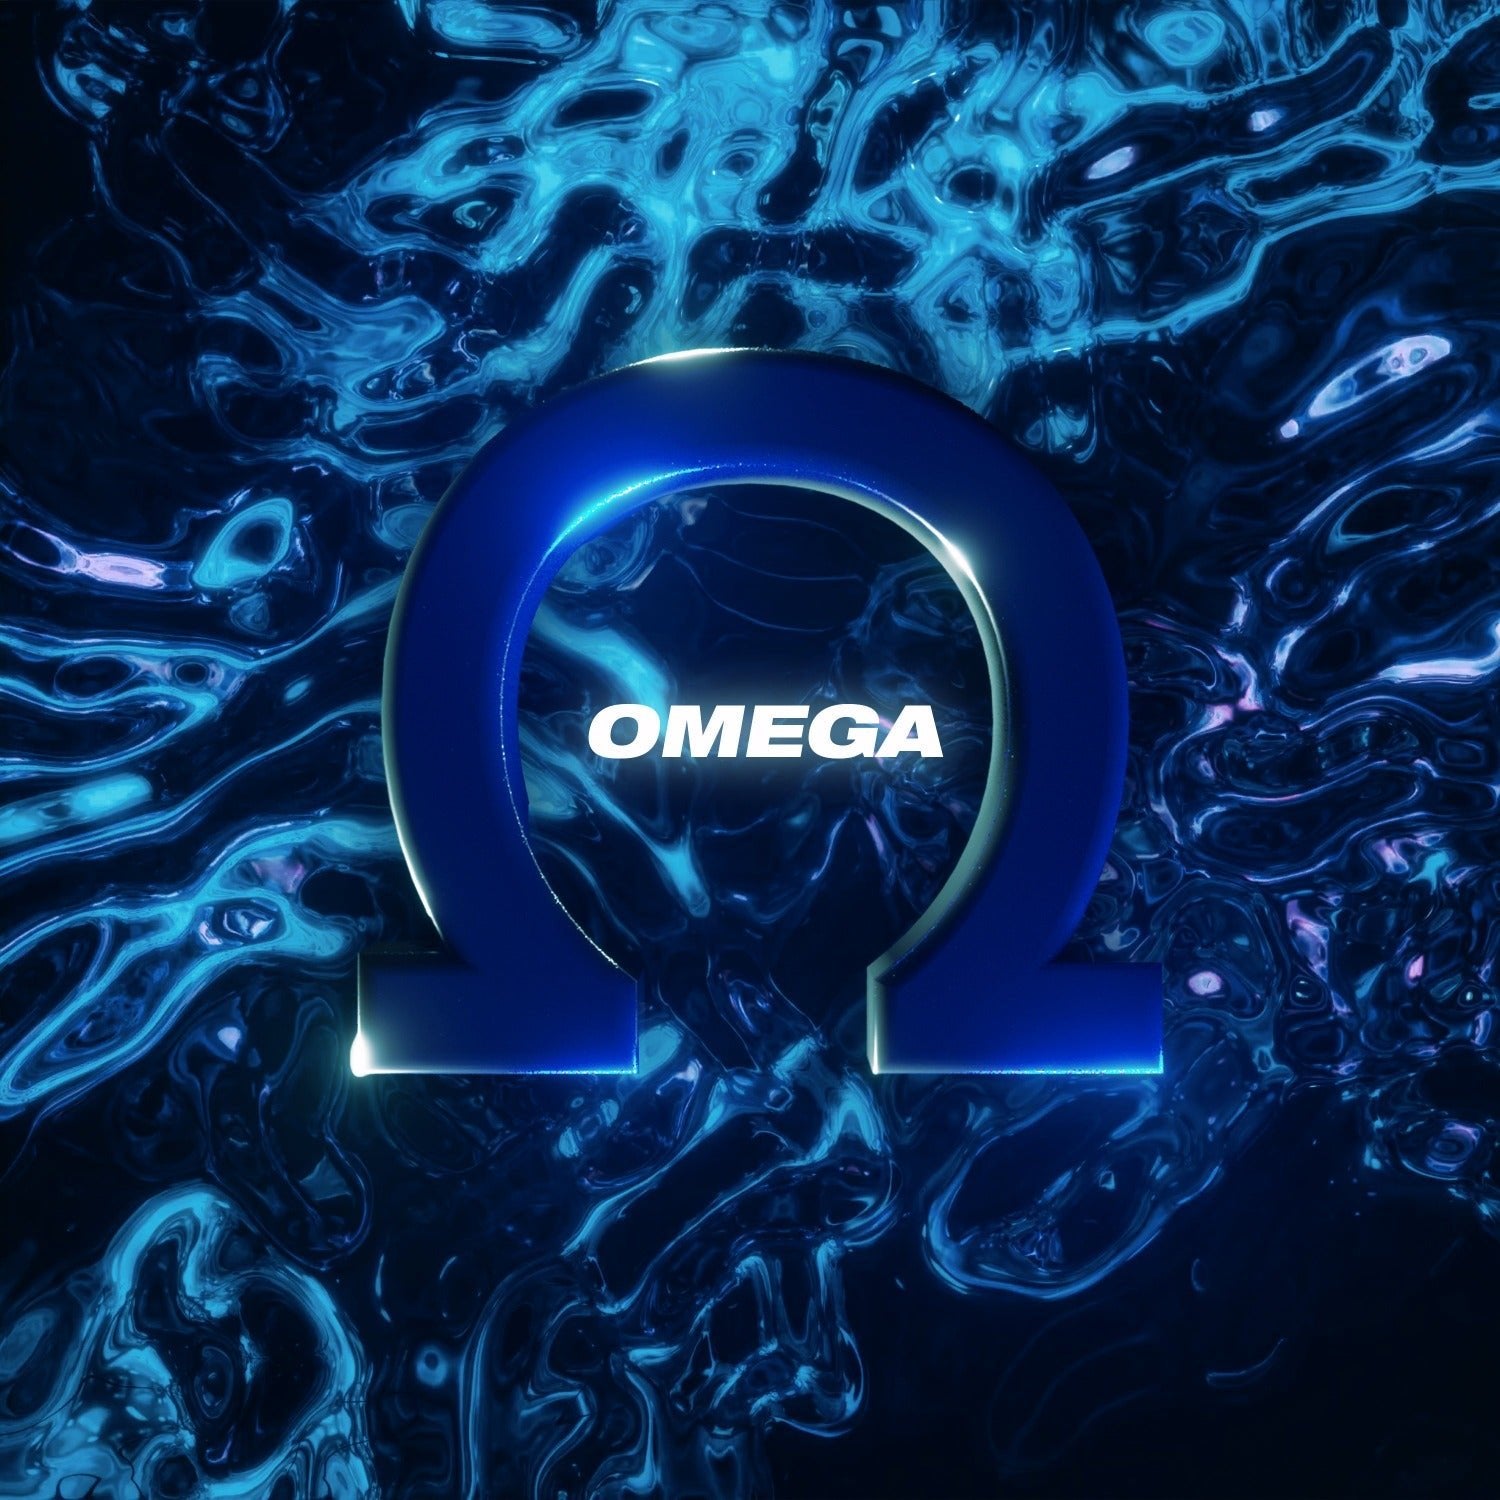 Omega Kit - Thirteen Tecc Records